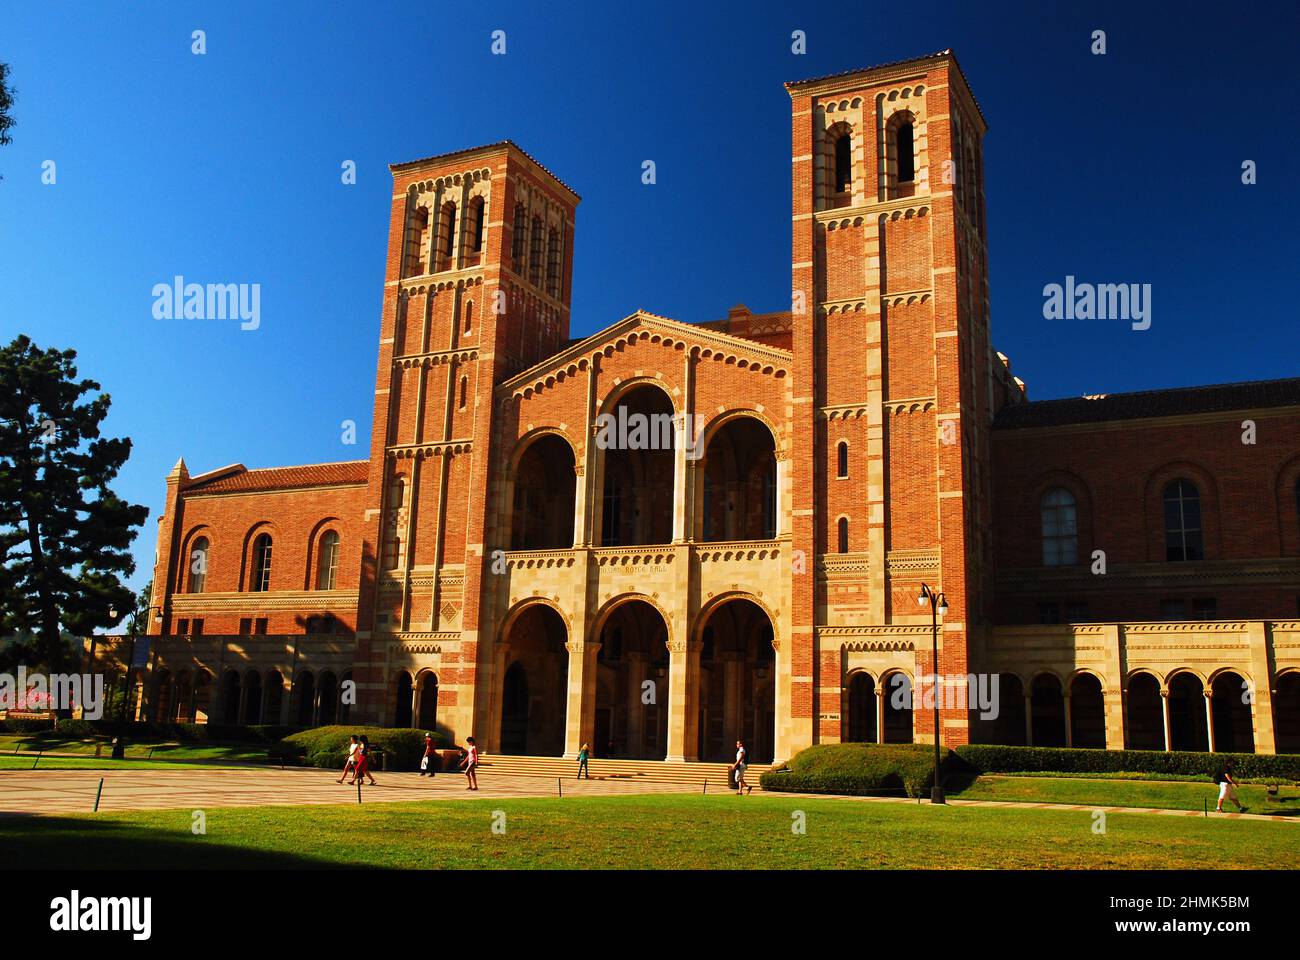 Nel campus della UCLA a Westwood California, vicino a Los Angeles, si trova Royce Hall, uno storico auditorium presso l'università universitaria Foto Stock